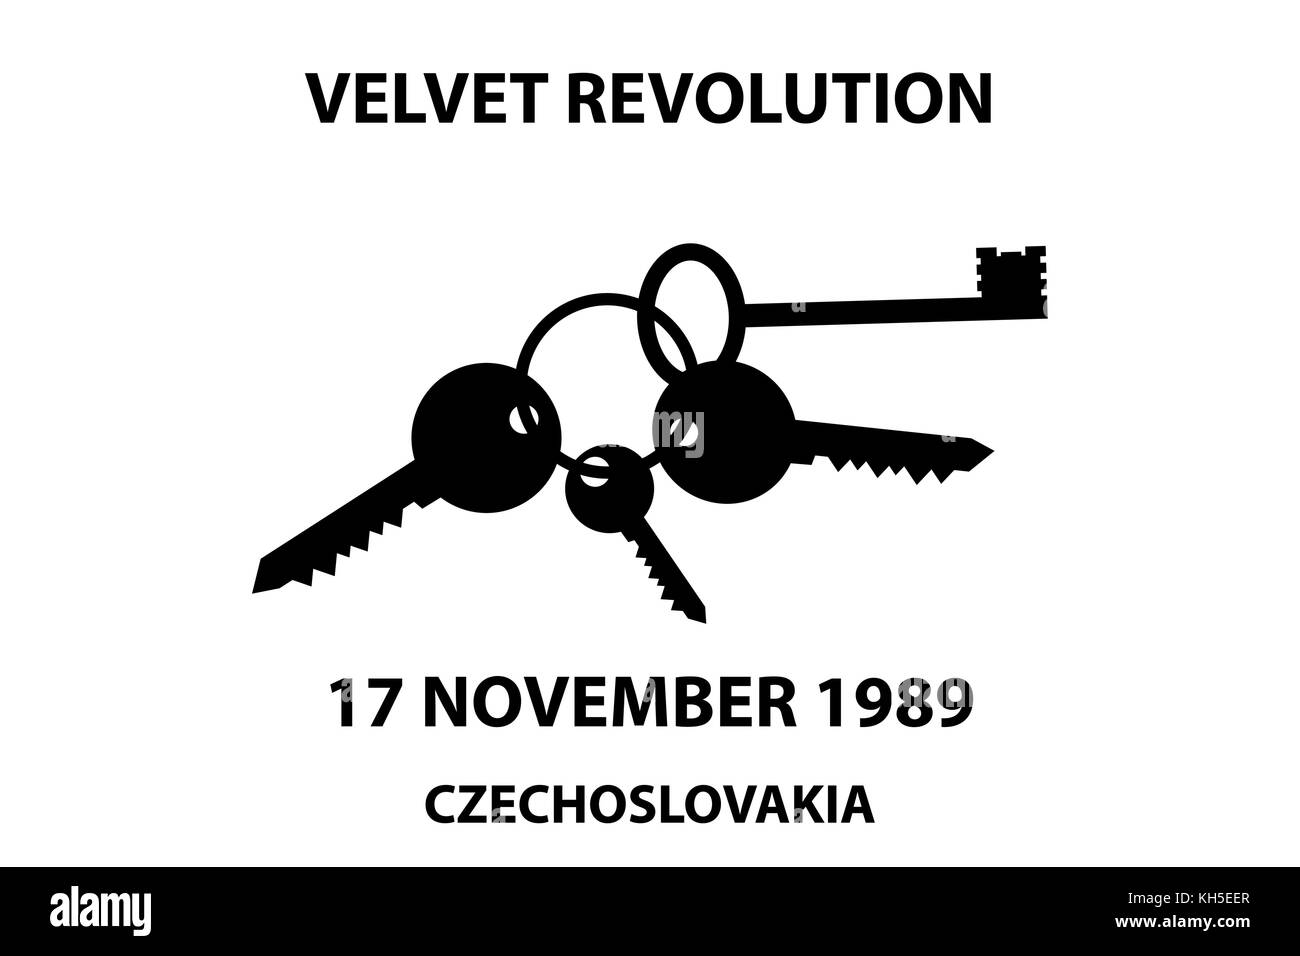 Clinking keys - velvet revolution symbol - 17 november 1989 Stock Vector